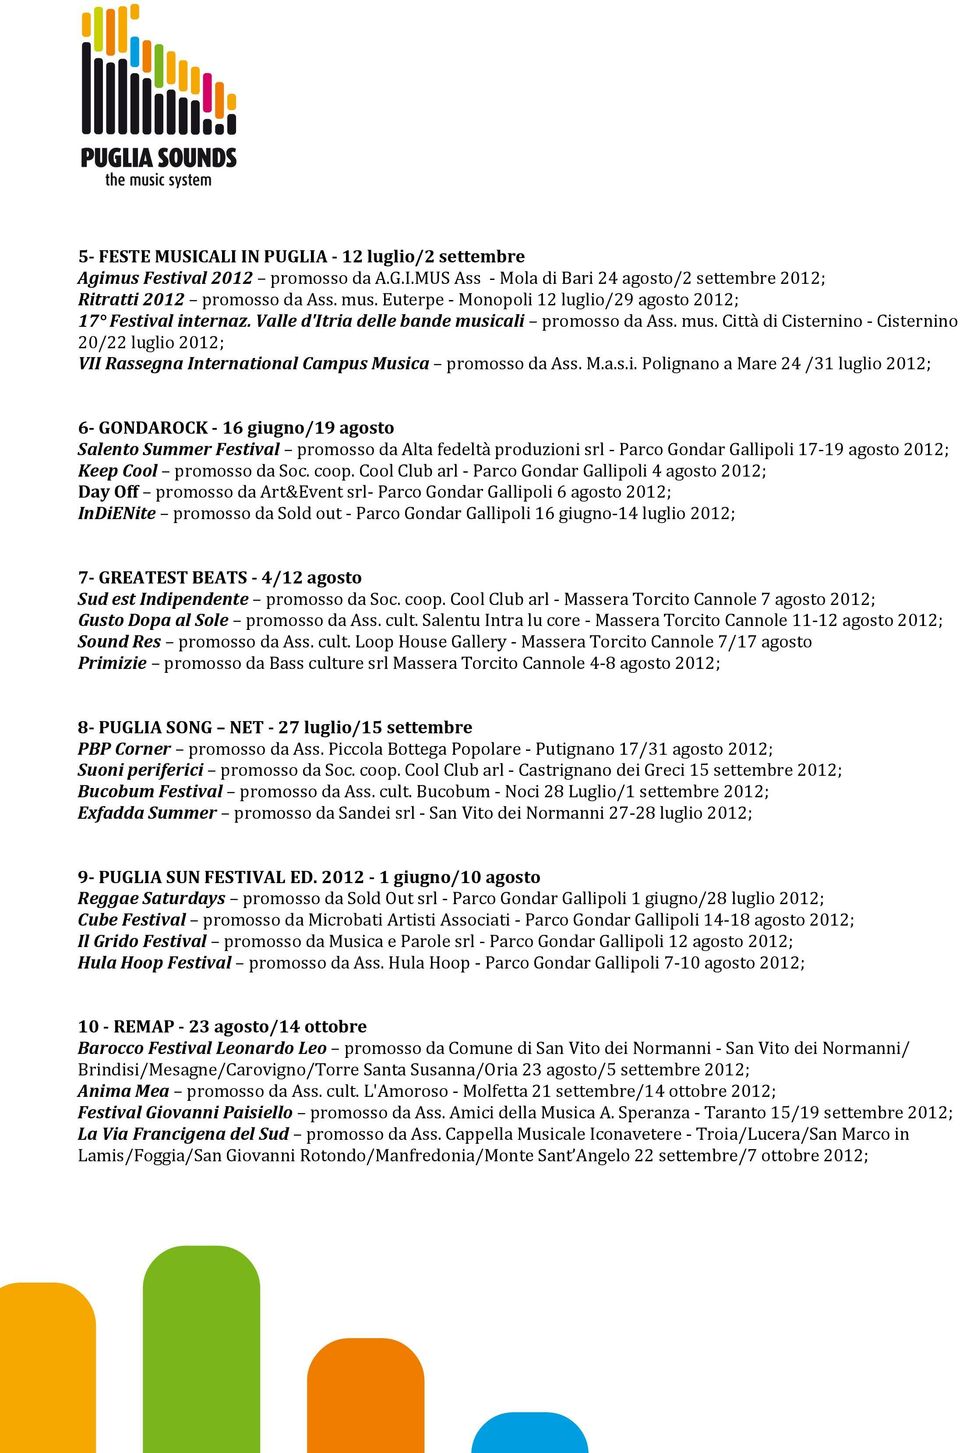 cali promosso da Ass. mus. Città di Cisternino - Cisternino 20/22 luglio 2012; VII Rassegna International Campus Musica promosso da Ass. M.a.s.i. Polignano a Mare 24 /31 luglio 2012; 6- GONDAROCK -